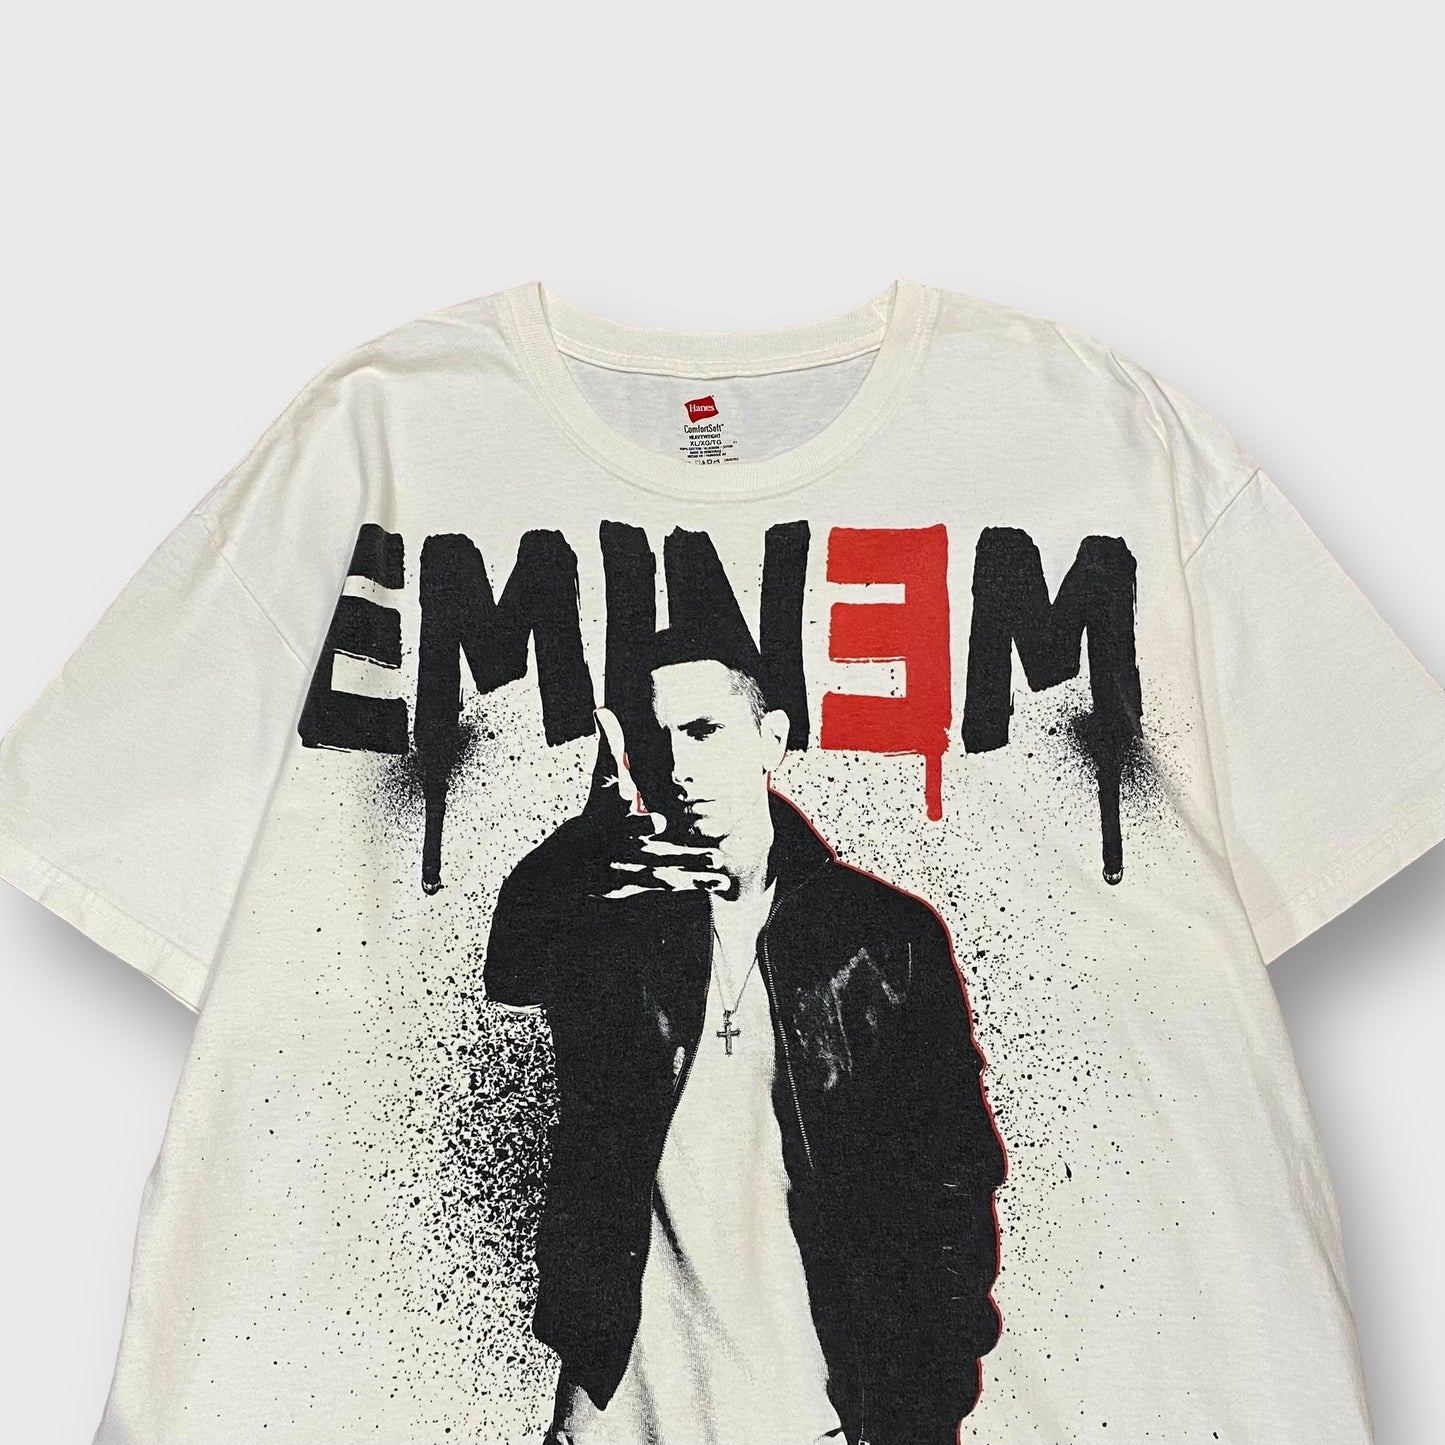 00's "EMINEM" Rap t-shirt